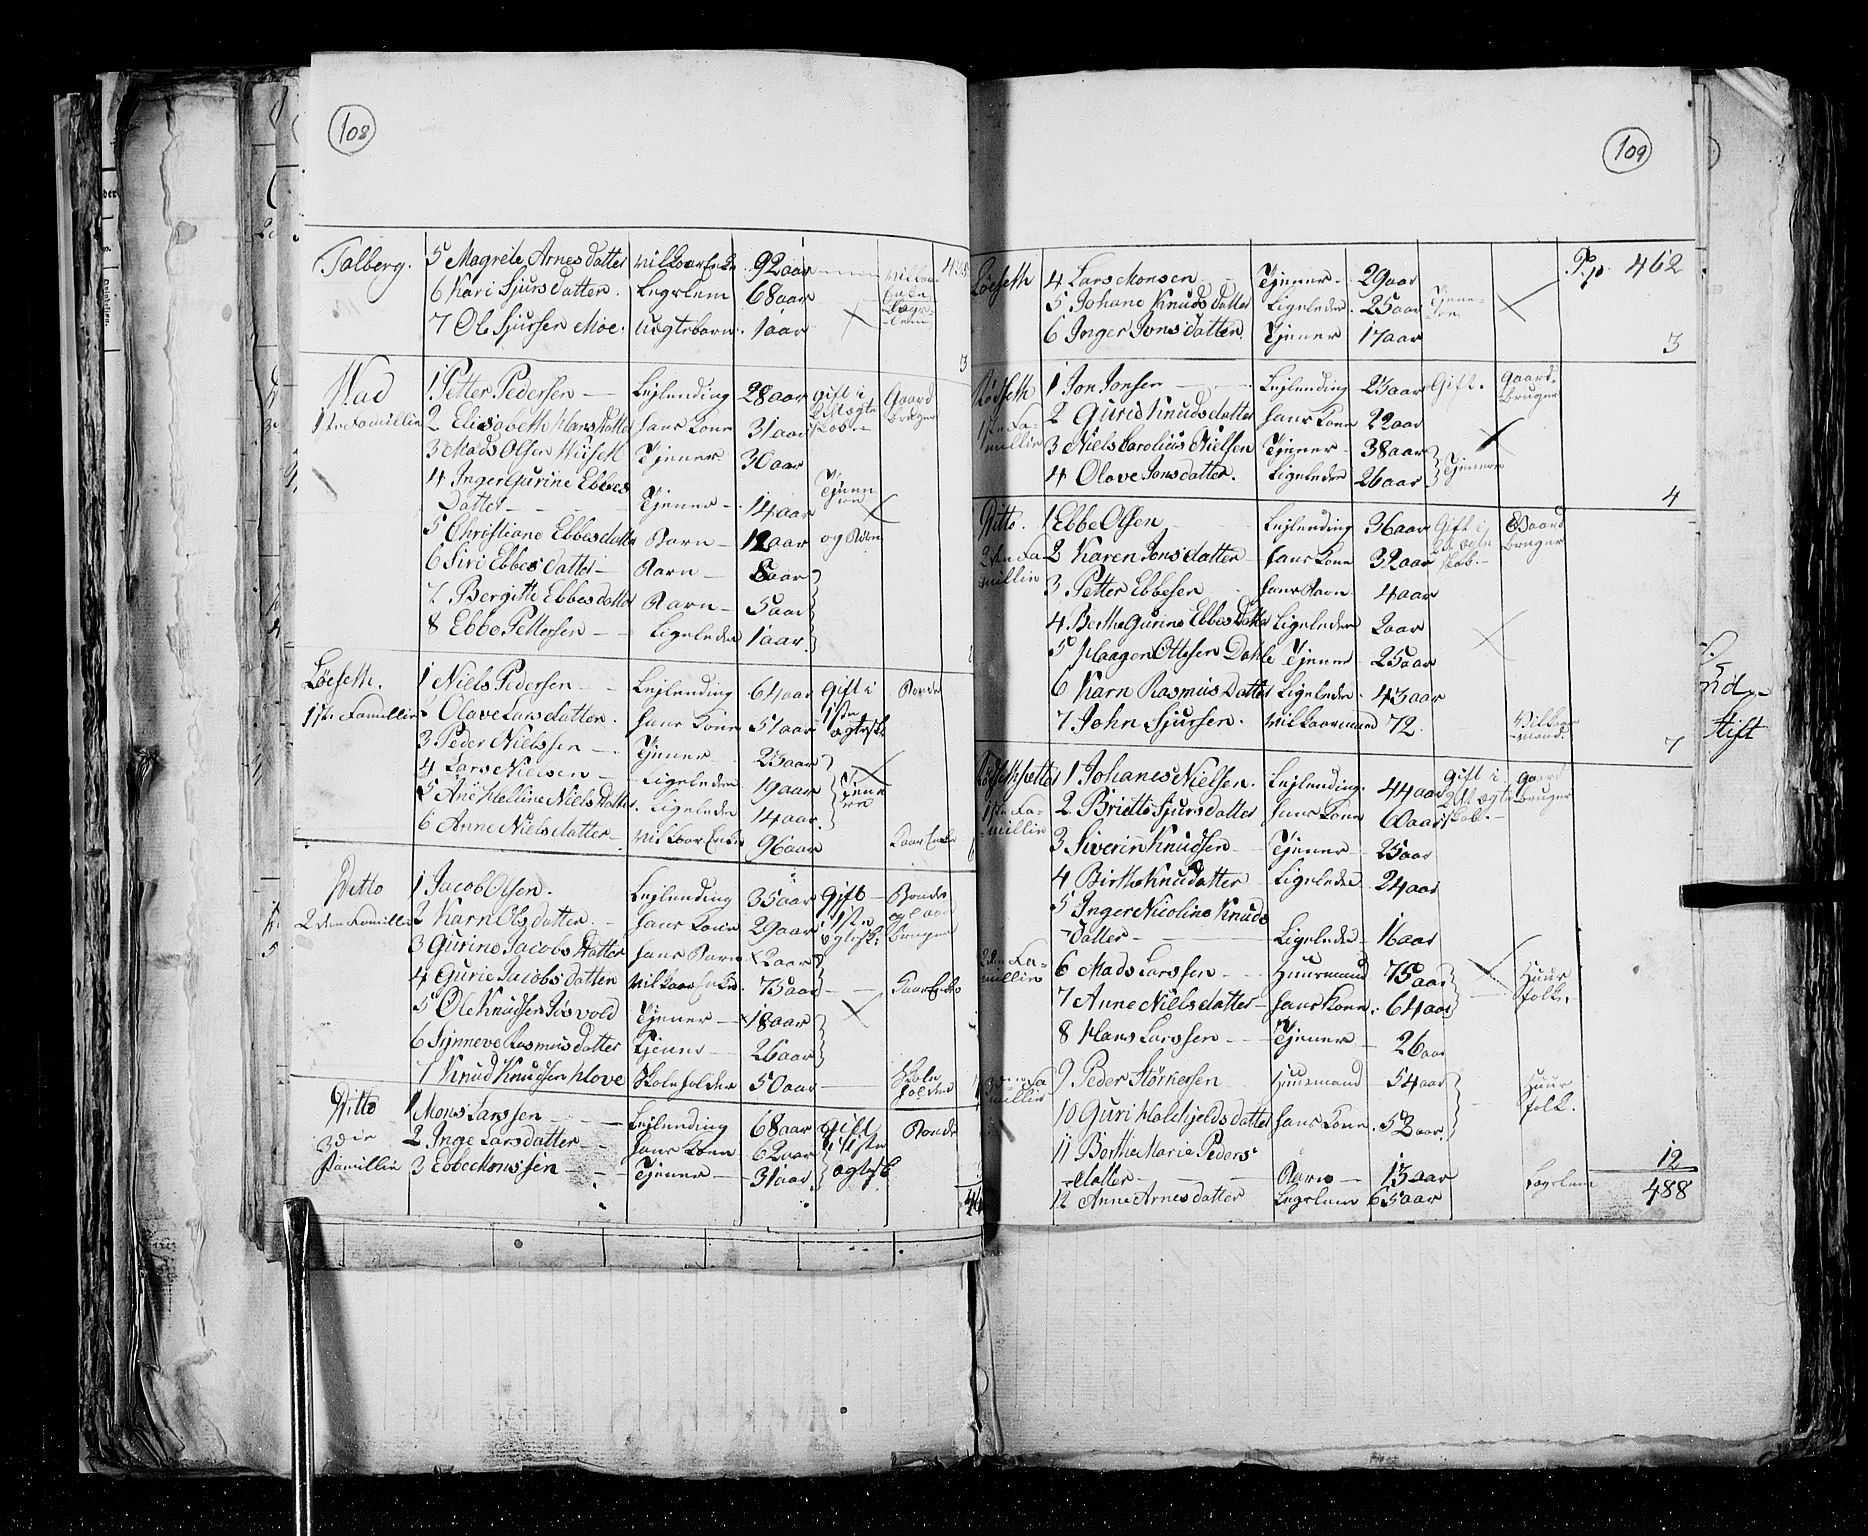 RA, Census 1825, vol. 15: Romsdal amt, 1825, p. 108-109